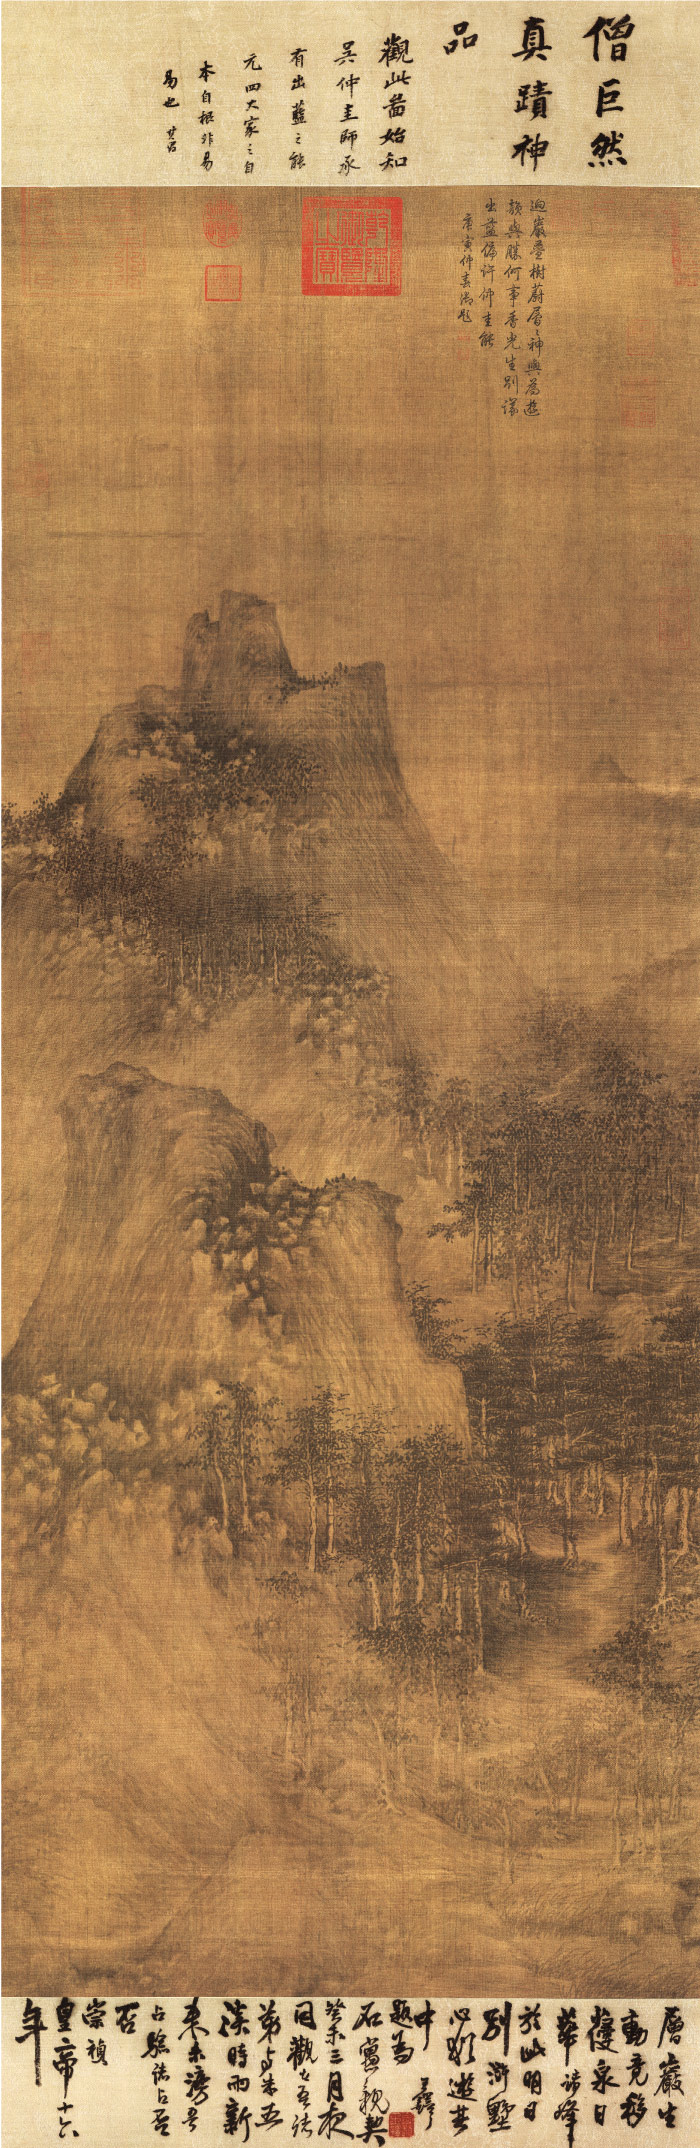 北宋 巨然 《层岩从树图》绢本高清作品 206x67